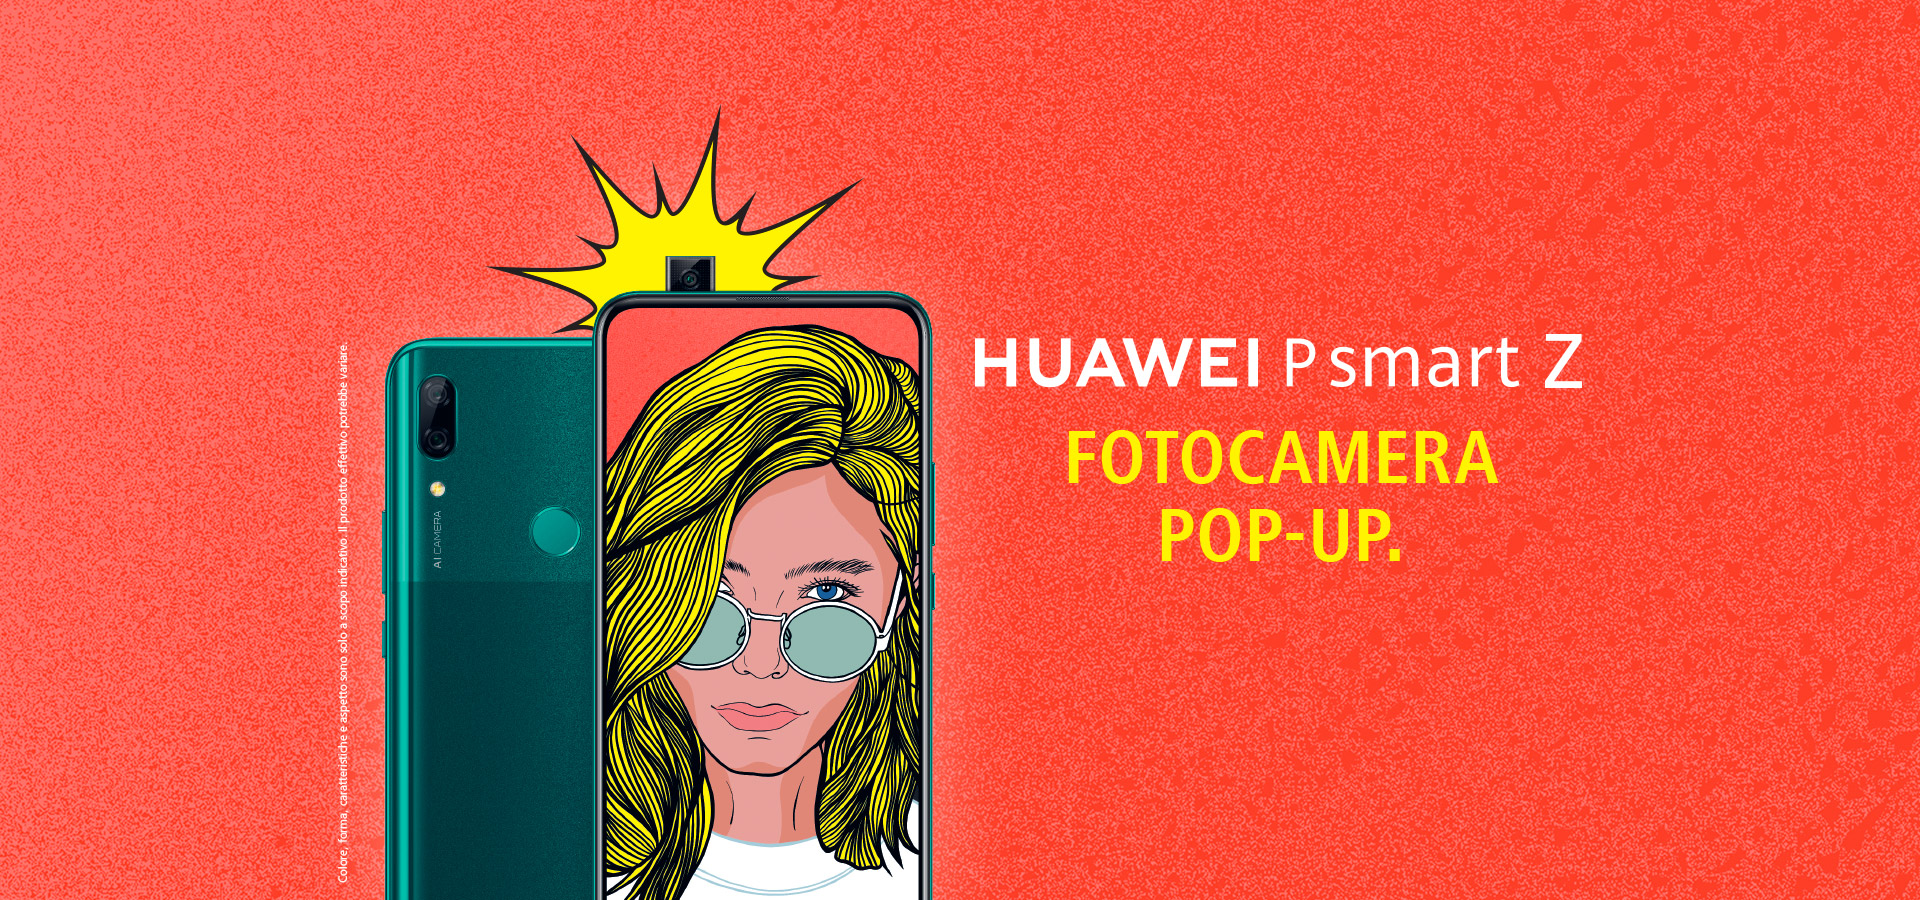 Huawei P Smart Z Foto Camera Popup